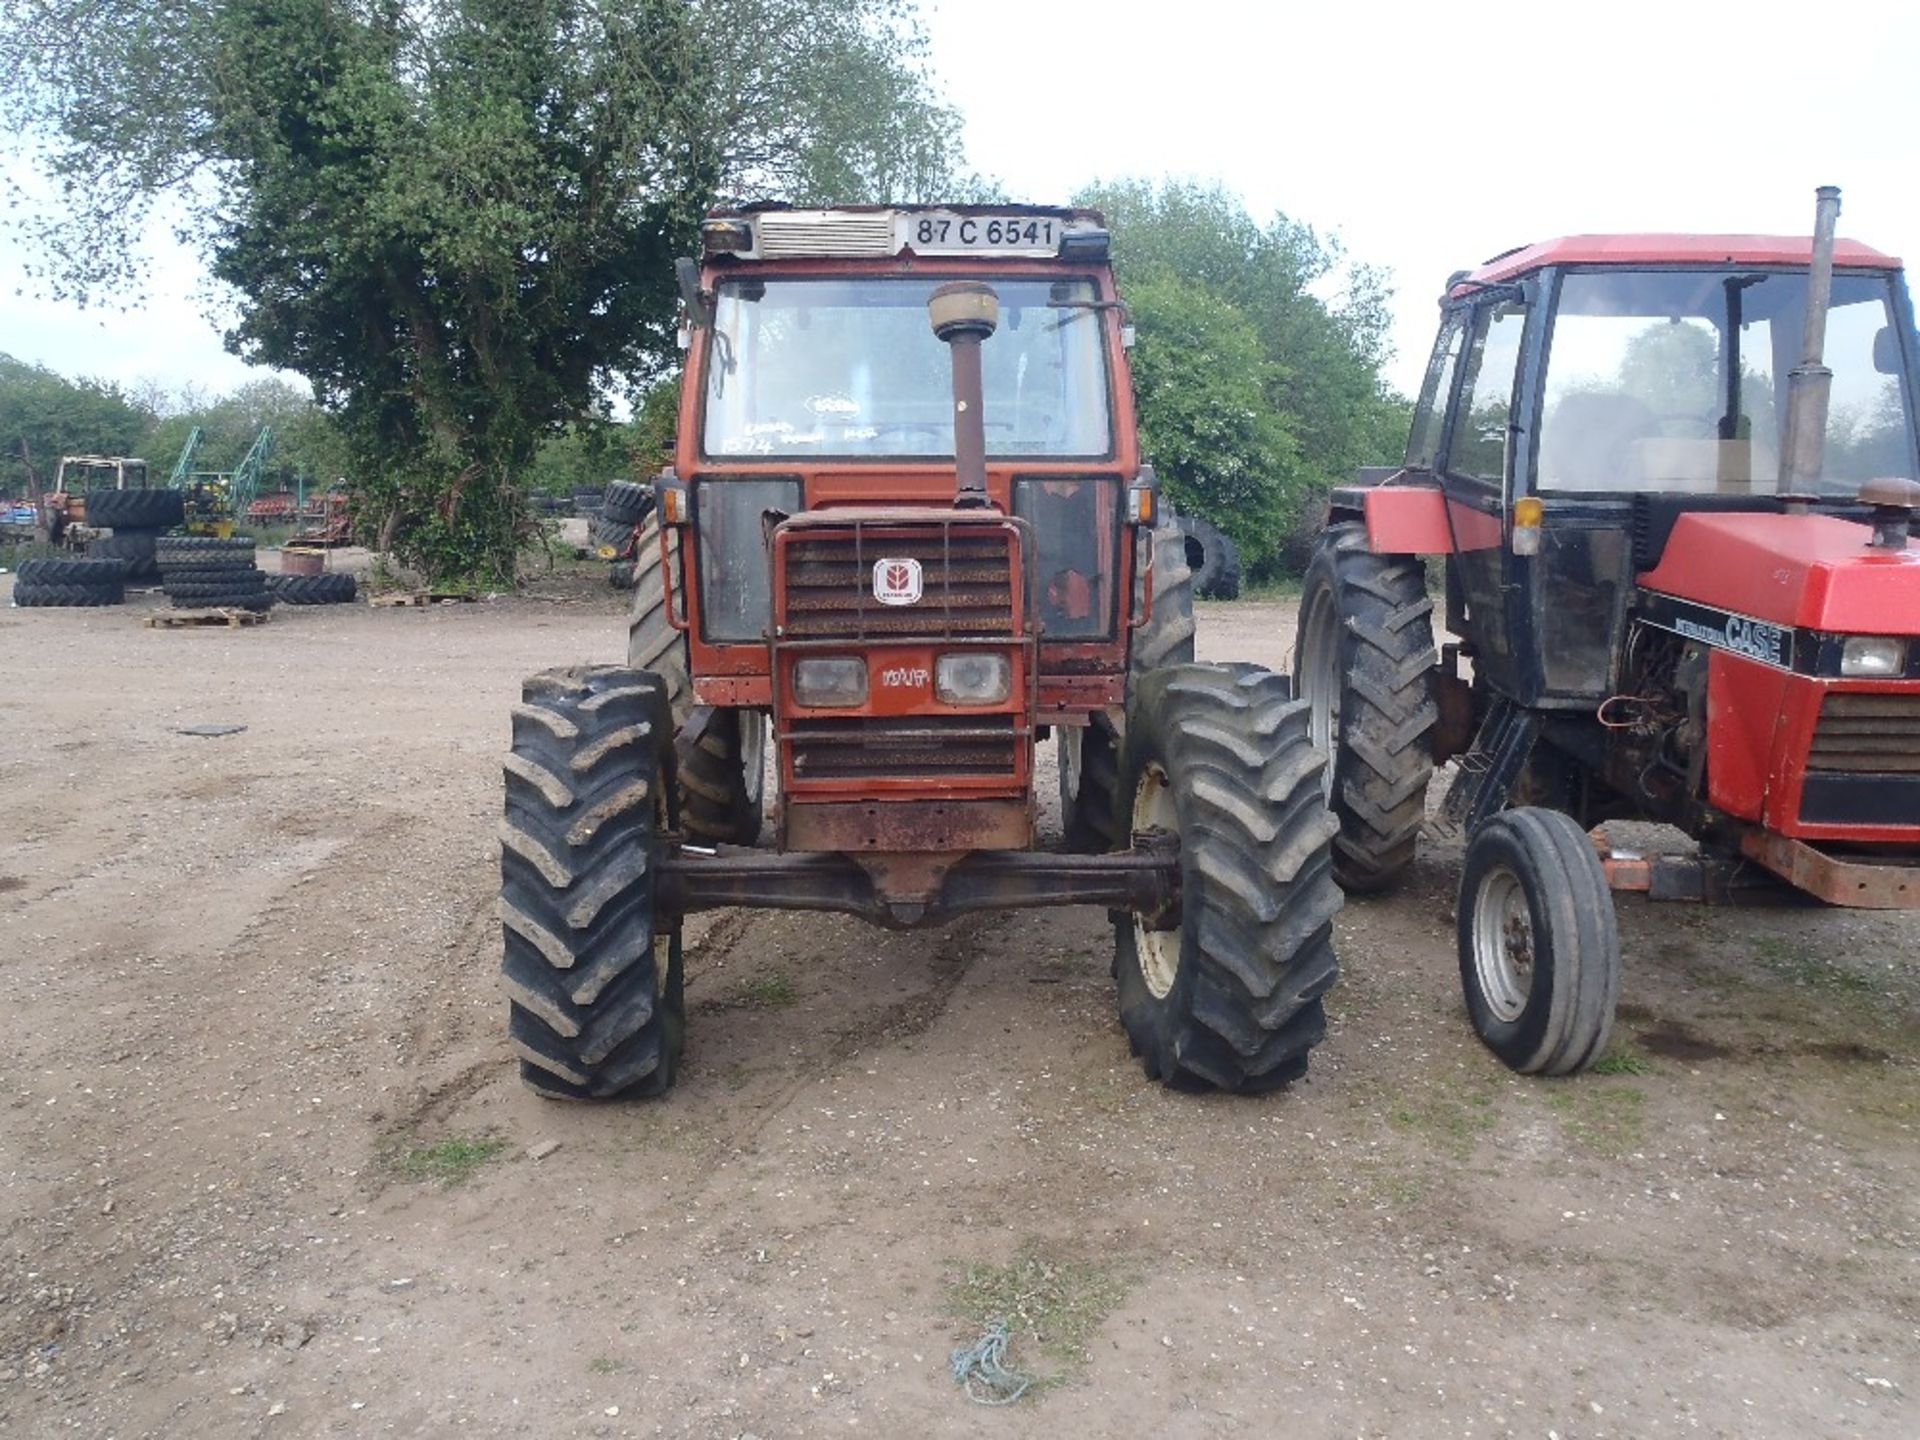 Fiat 100-90 4wd Tractor Reg. No. 87-C-6541 Ser. No. 33988D - Image 2 of 5